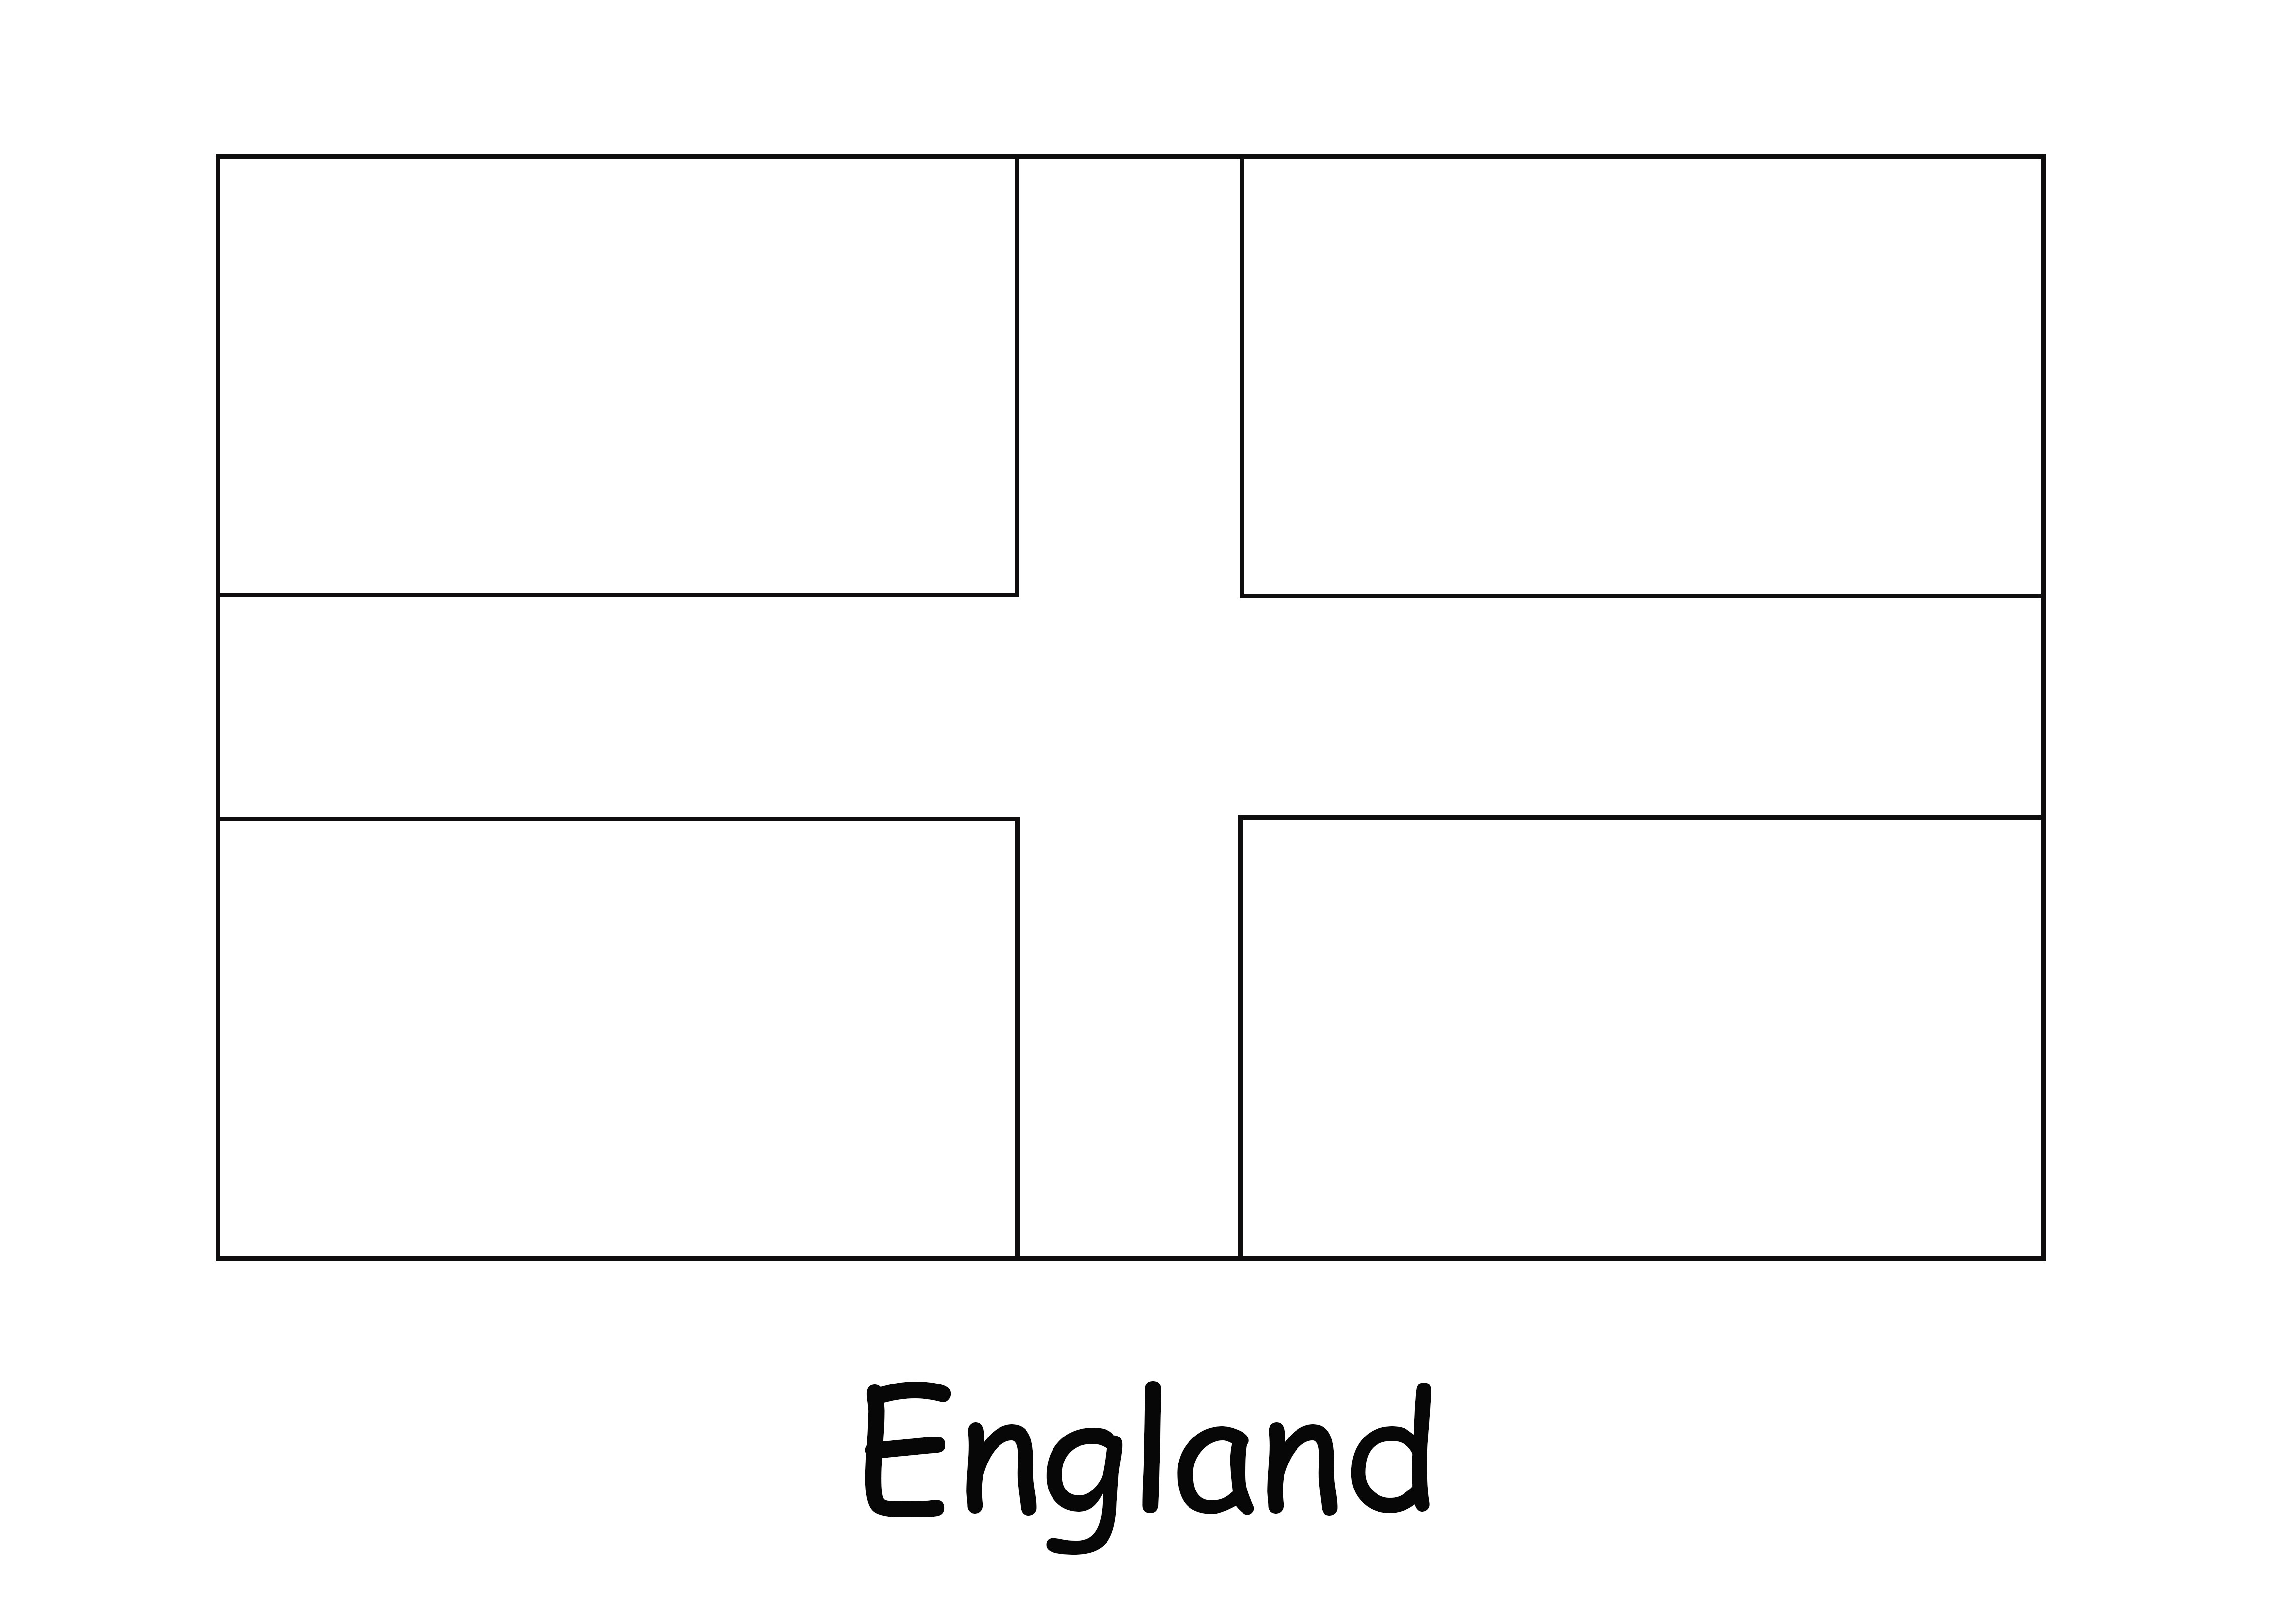 Super einfach auszumalen und England-Flaggenbild für Kinder zu drucken